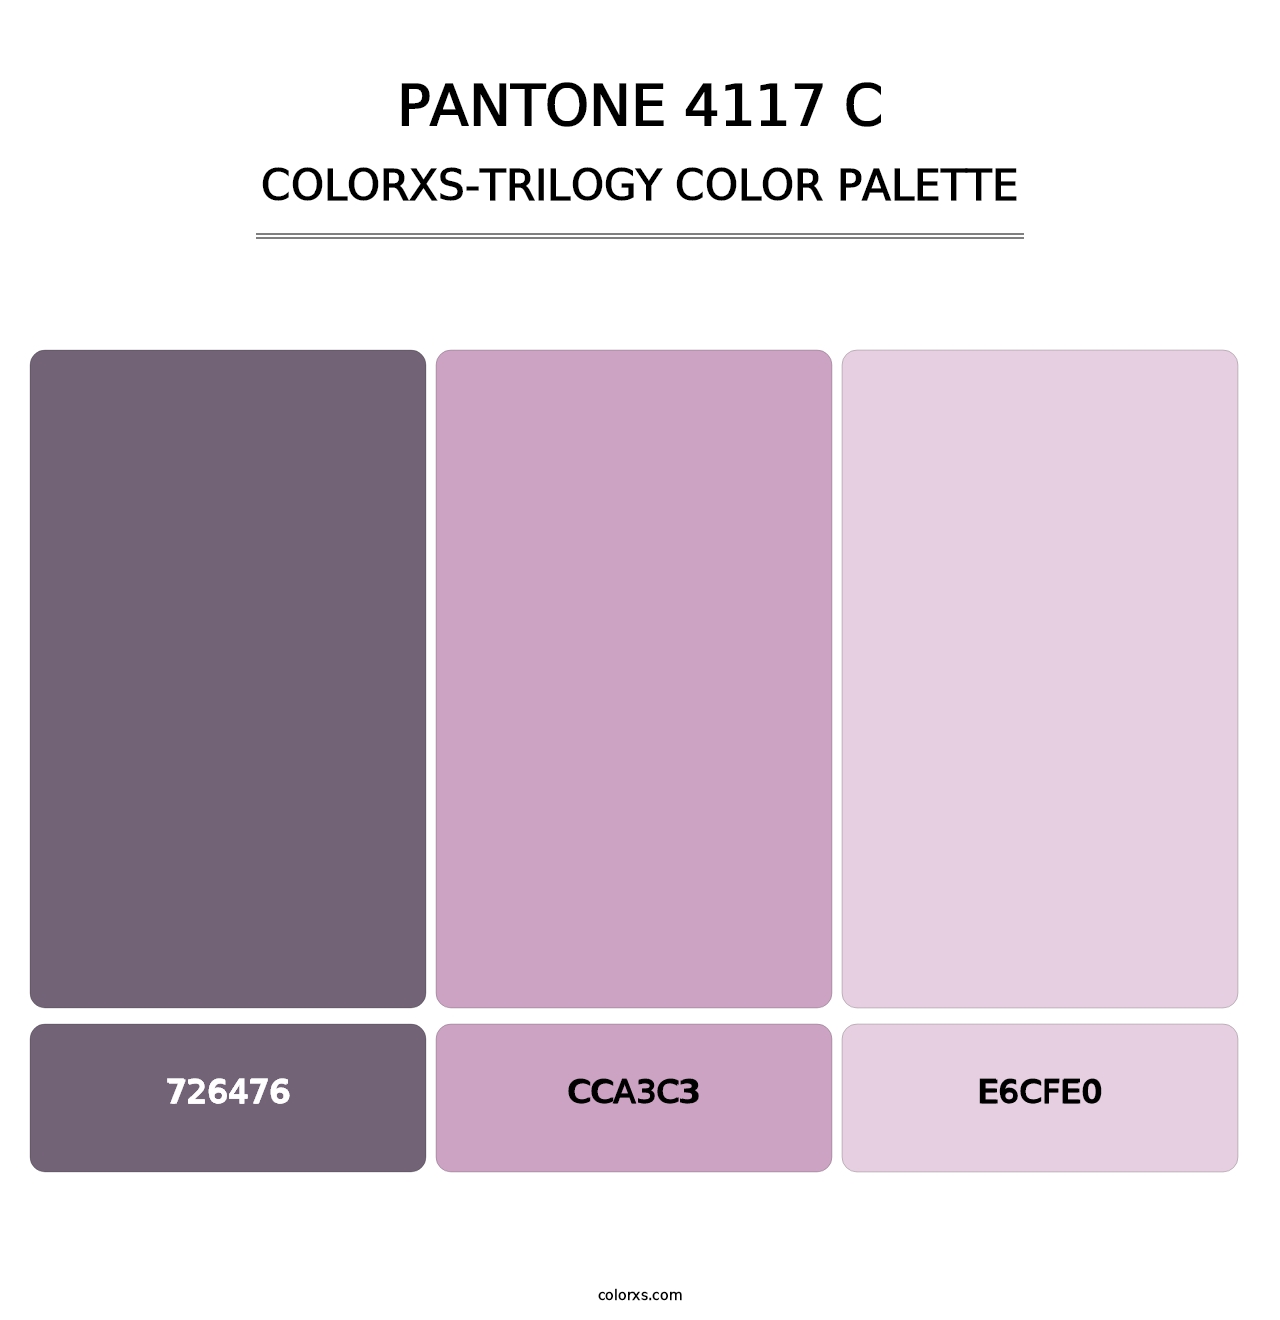 PANTONE 4117 C - Colorxs Trilogy Palette